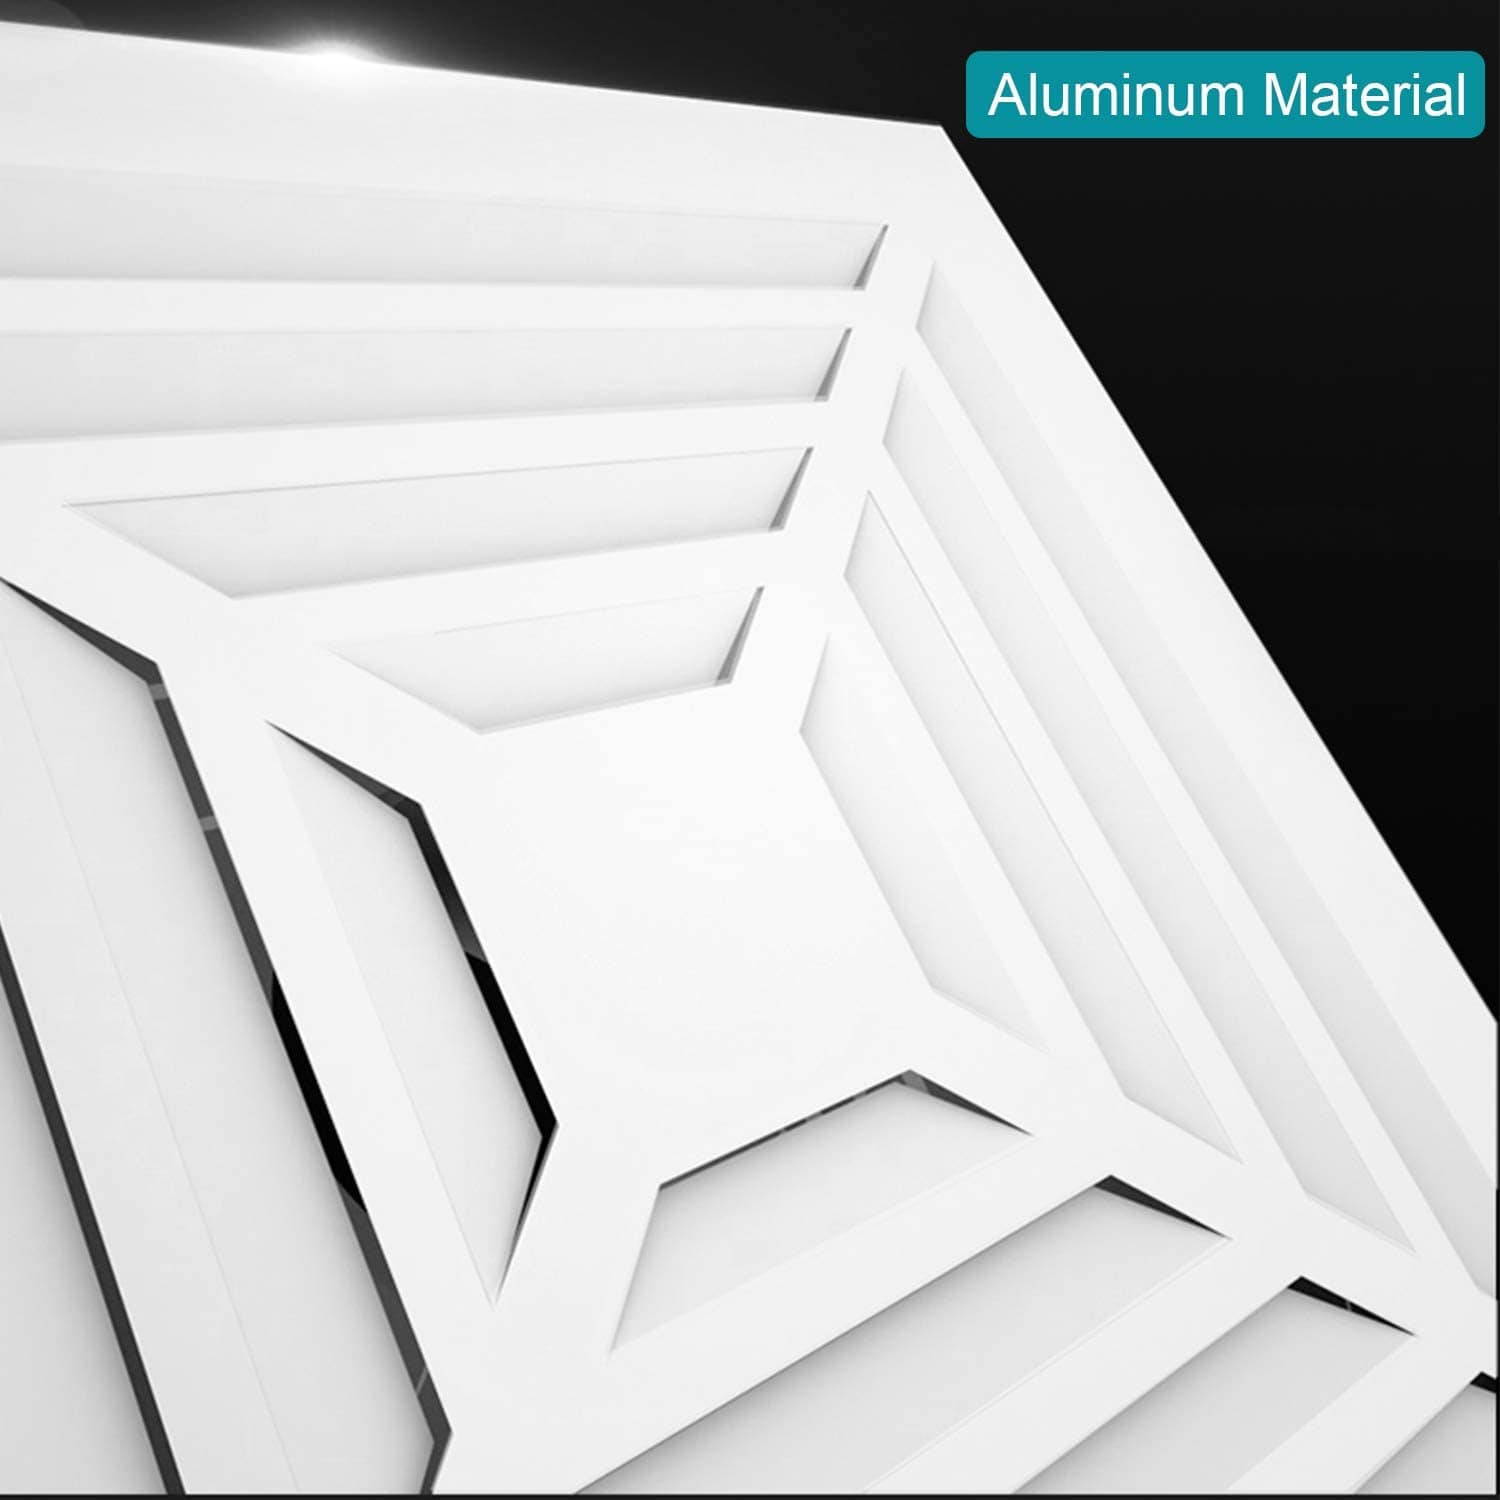 Aluminum Alloy Air Vent Cover 12'' X 12''